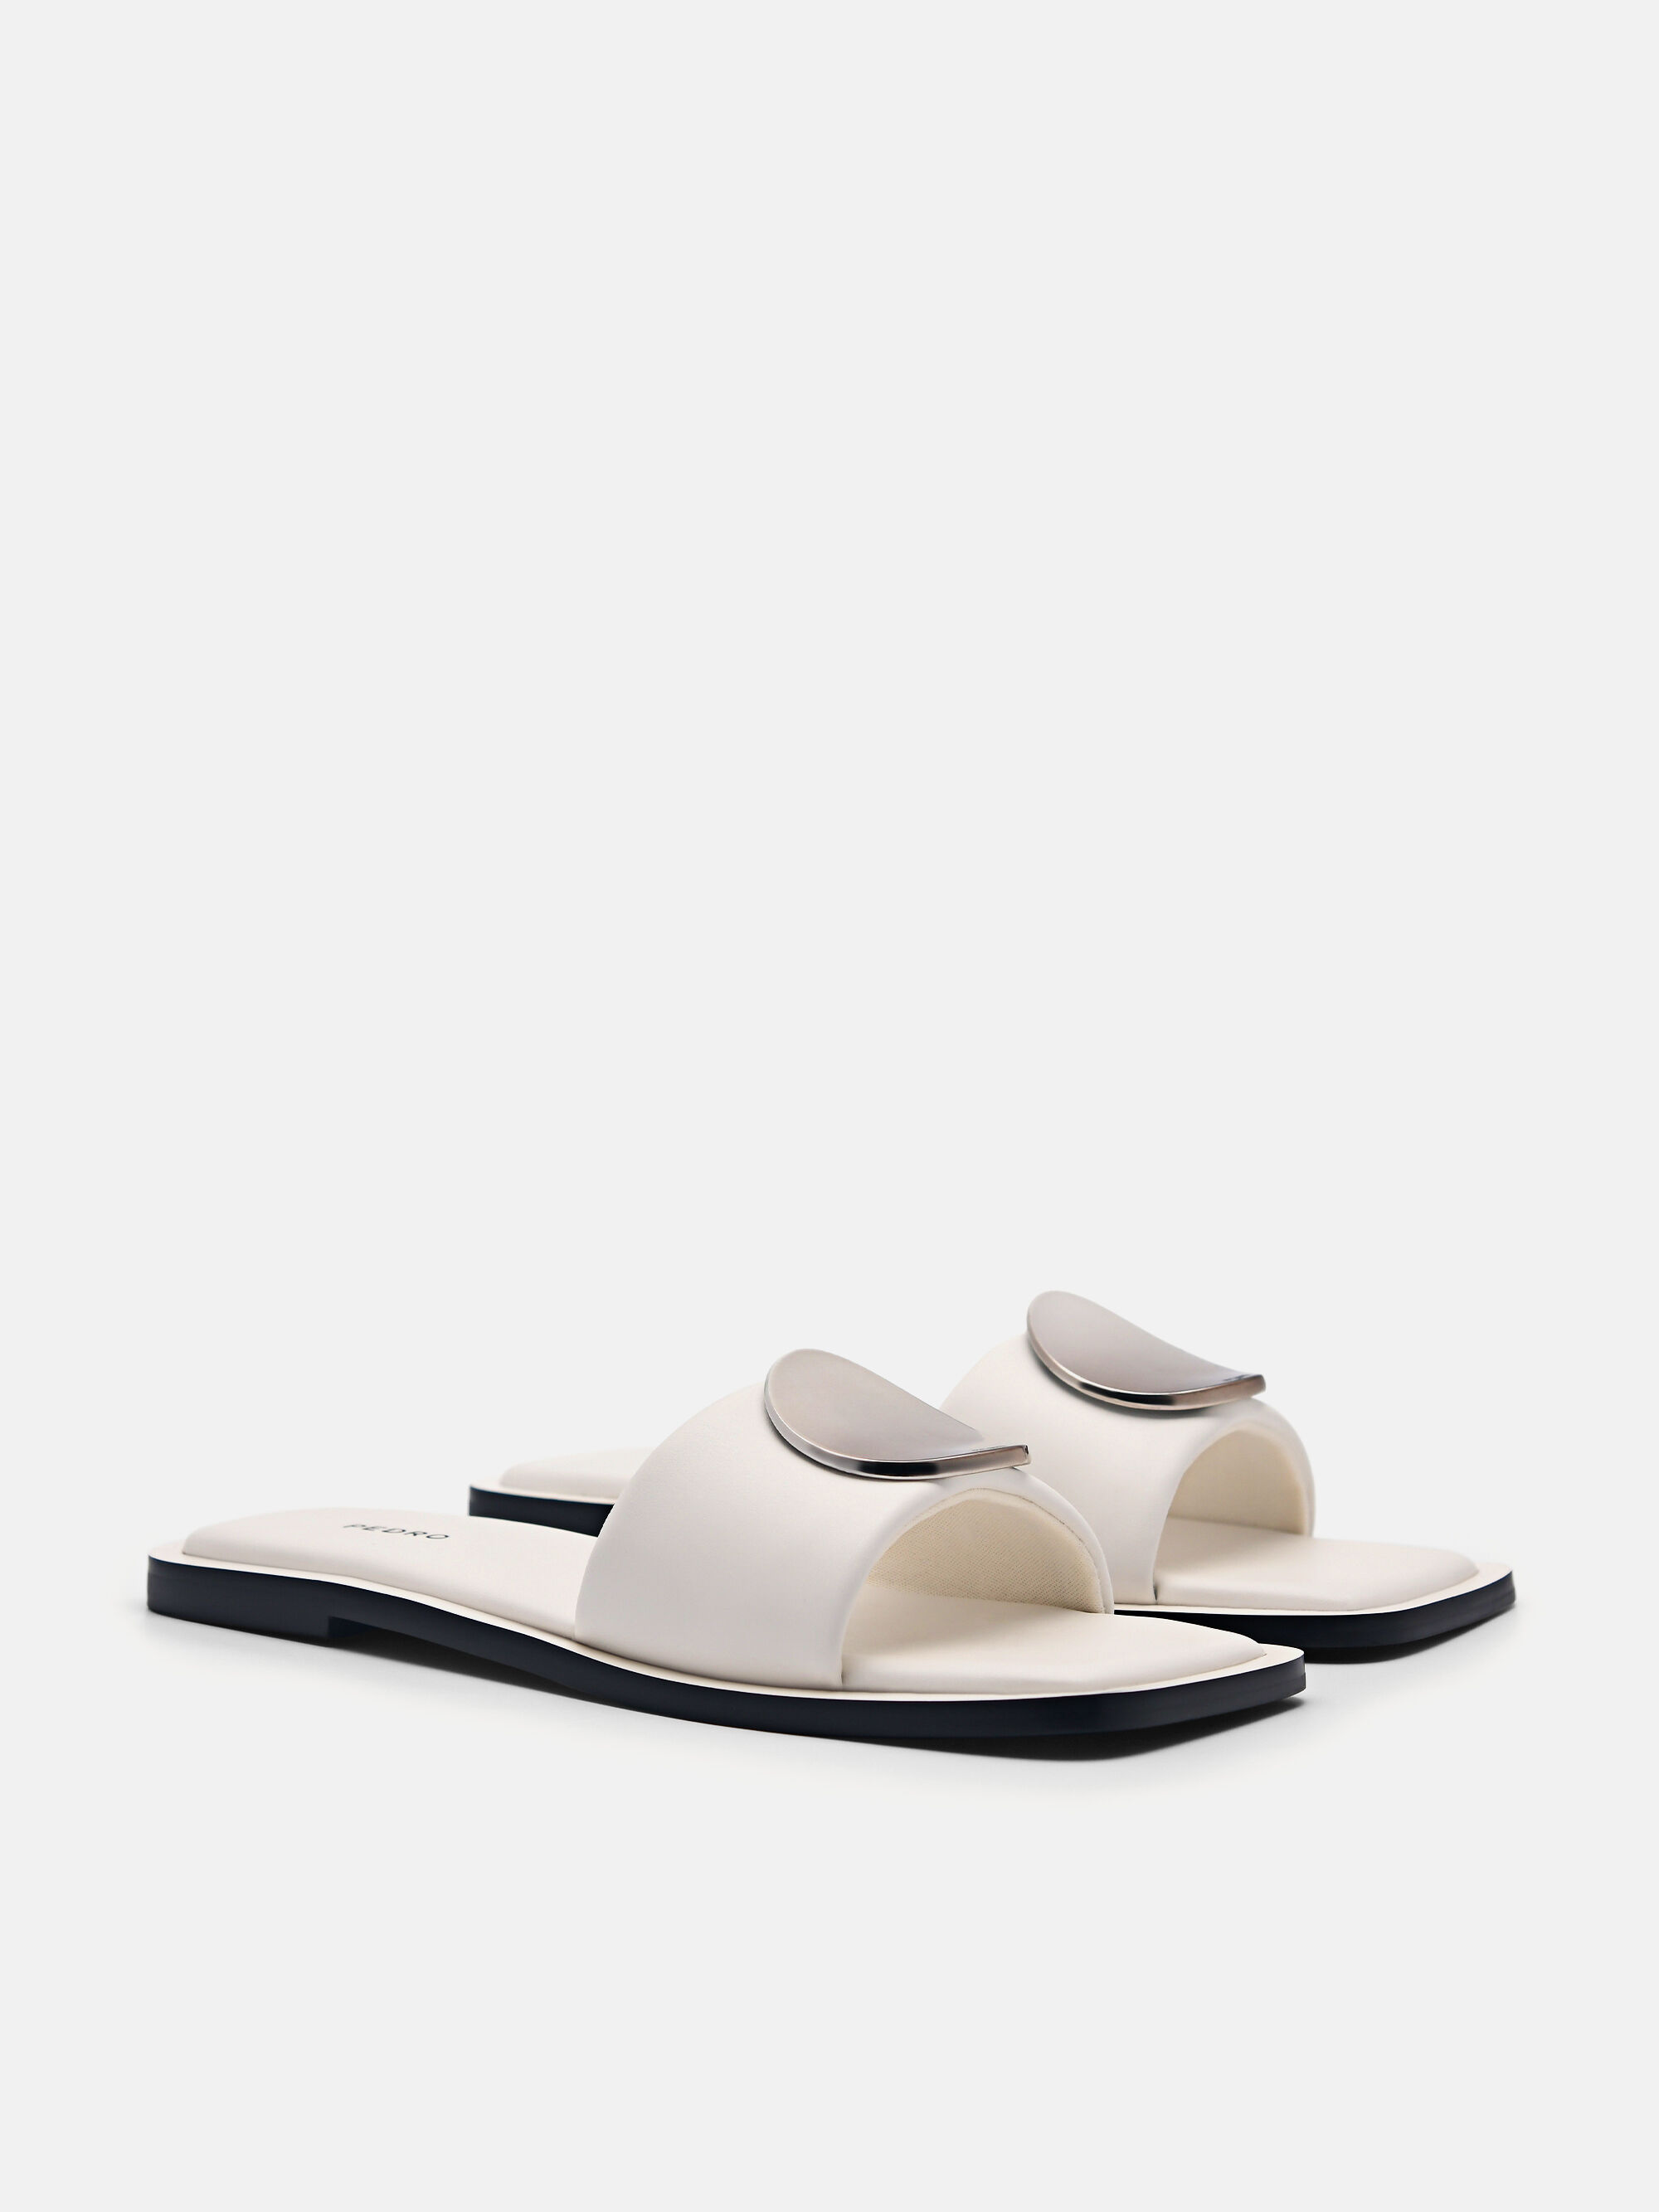 Vibe Square Toe Sandals, White